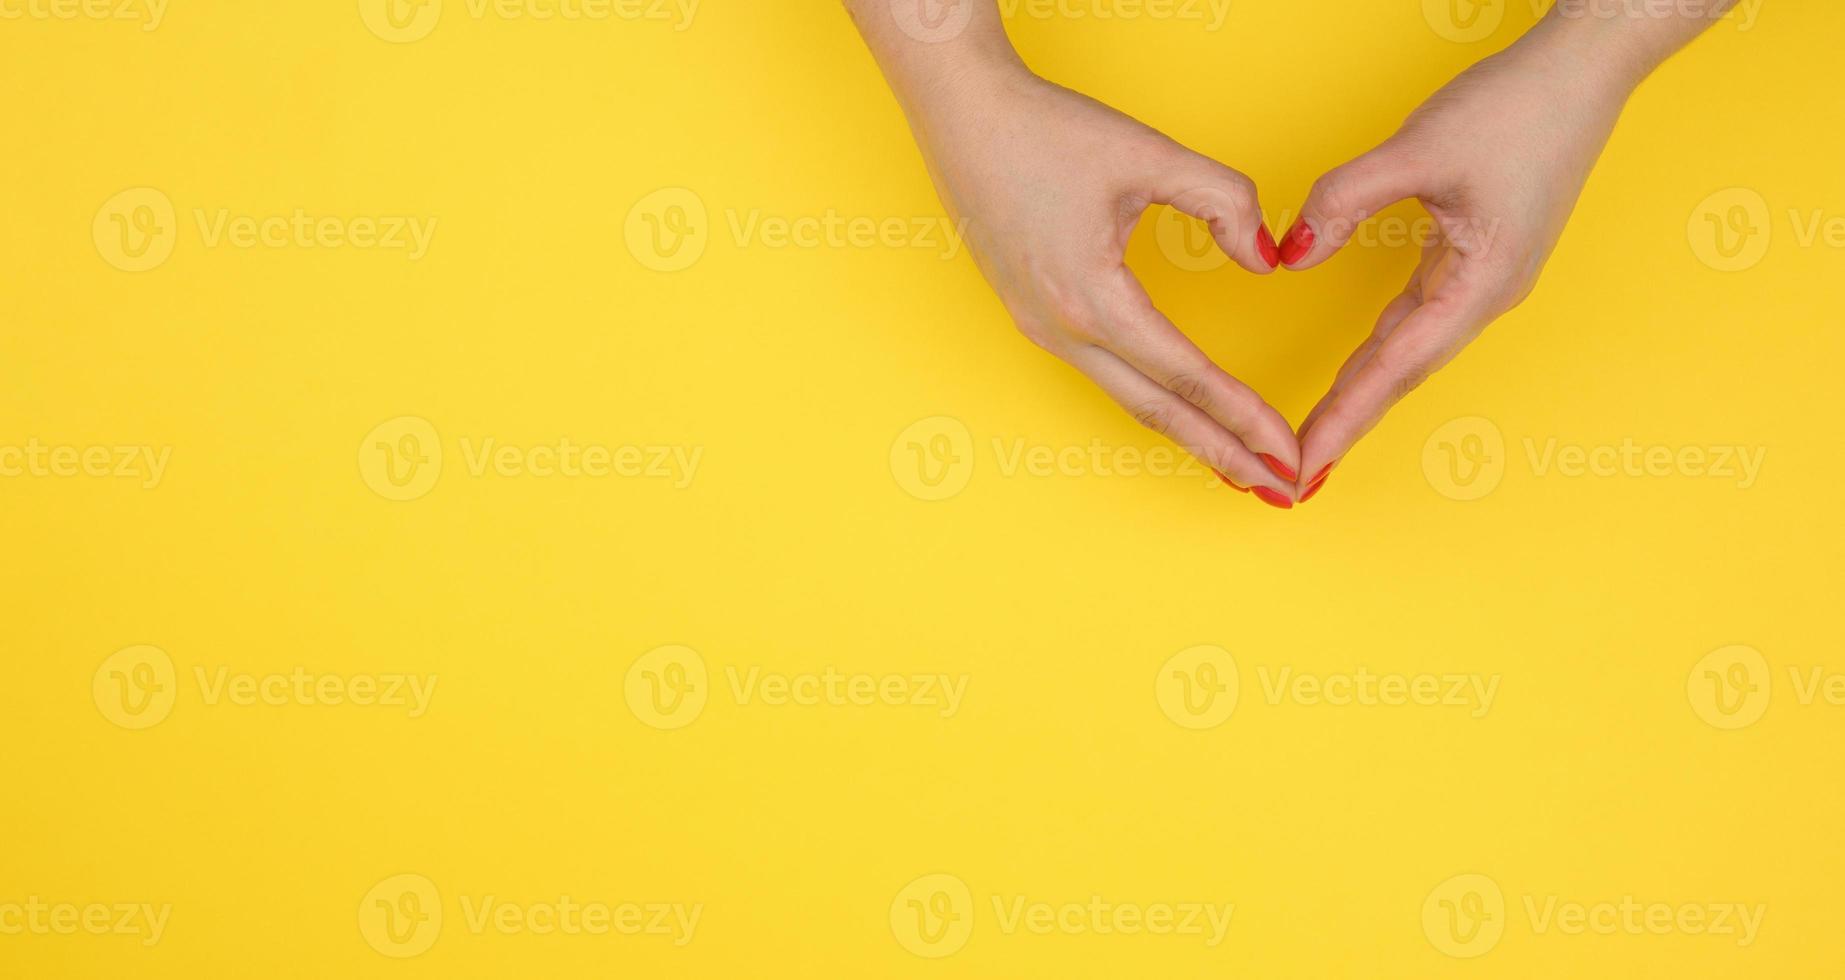 två kvinna händer vikta i de form av en hjärta på en gul bakgrund. tacksamhet och vänlighet begrepp, baner foto